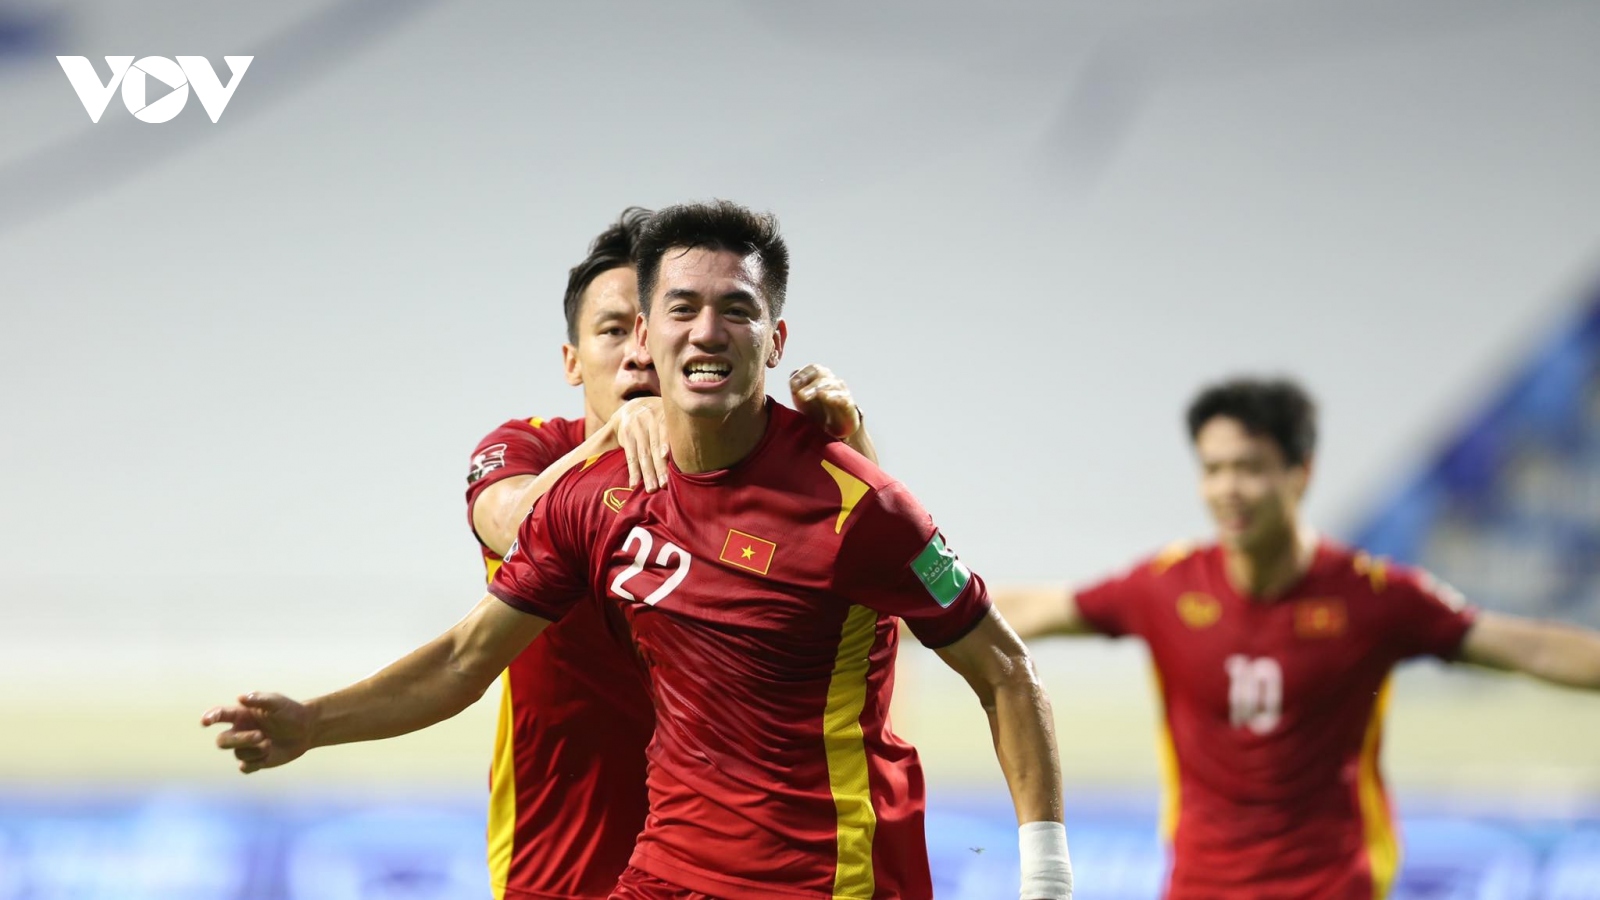 HLV Park Hang Seo: "ĐT Việt Nam sẽ giữ được chiến thuật để thắng UAE"